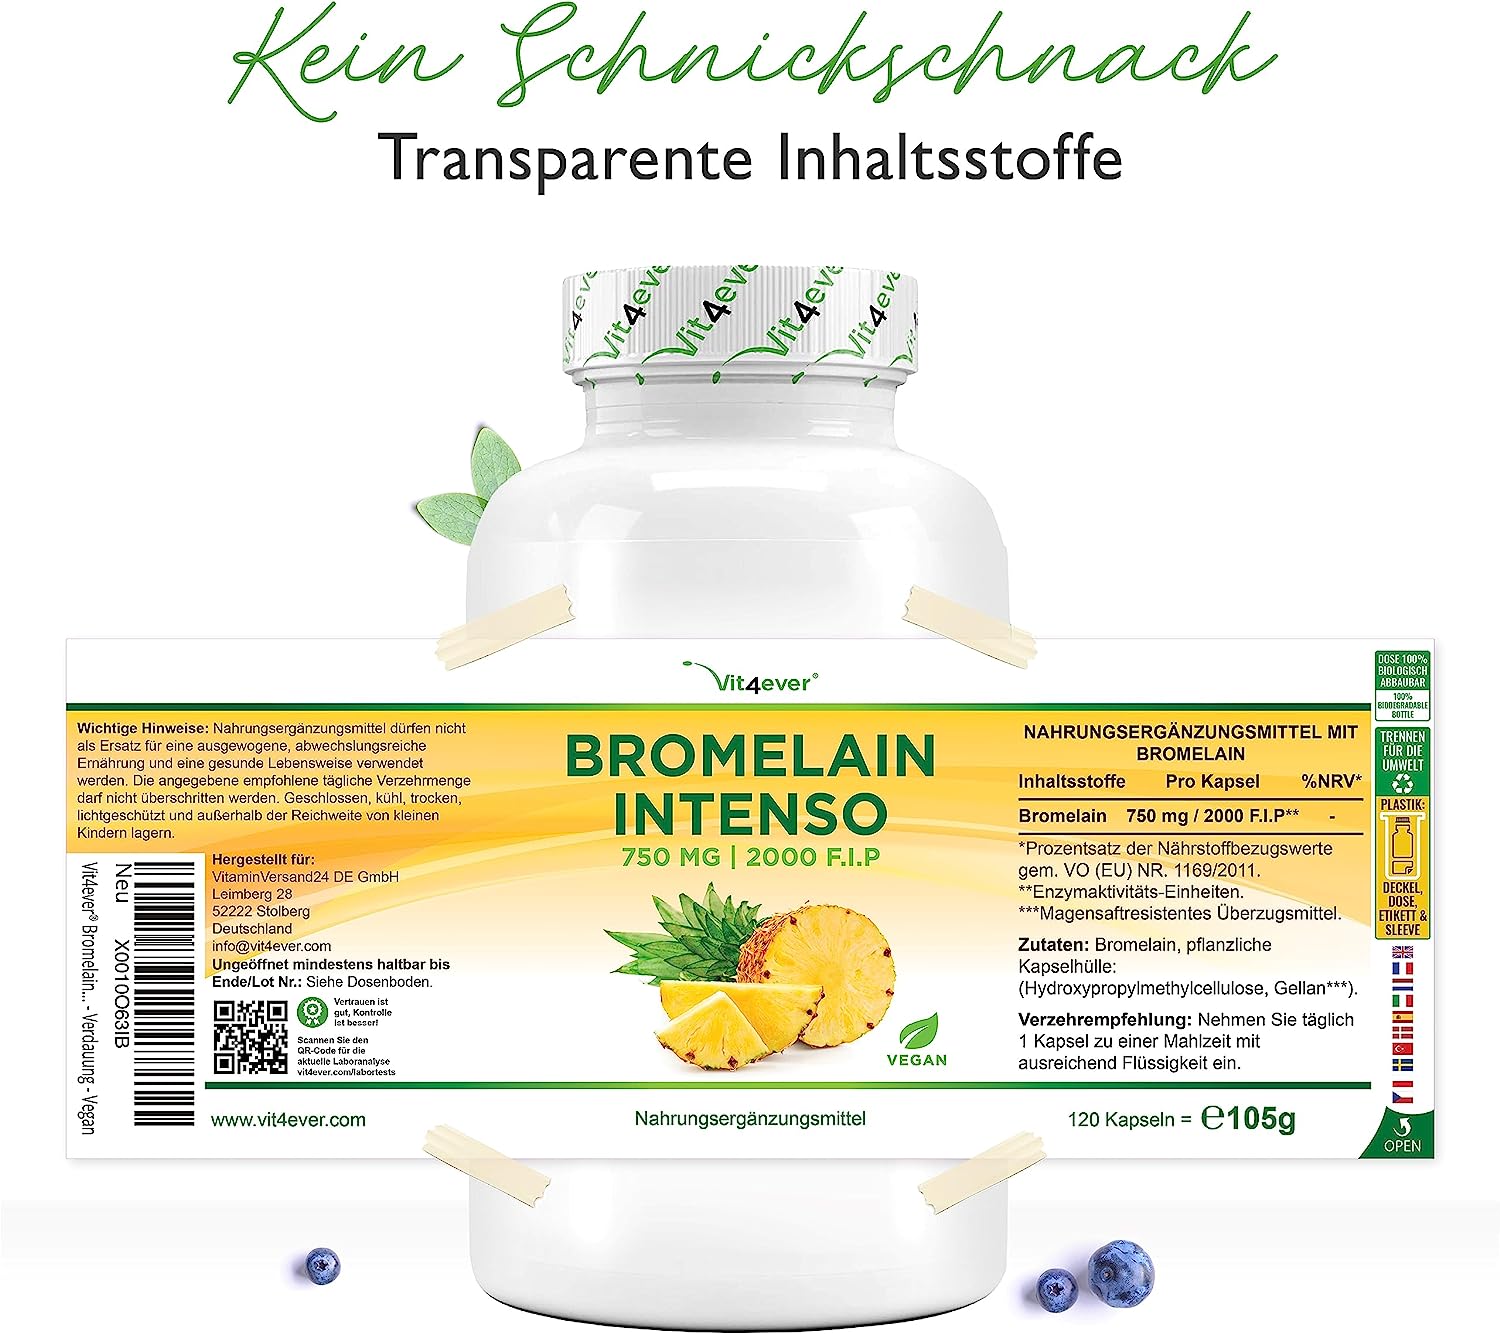 Vit4ever Bromelain Intenso 750 mg (2000 F.I.P) - 120 Kapseln